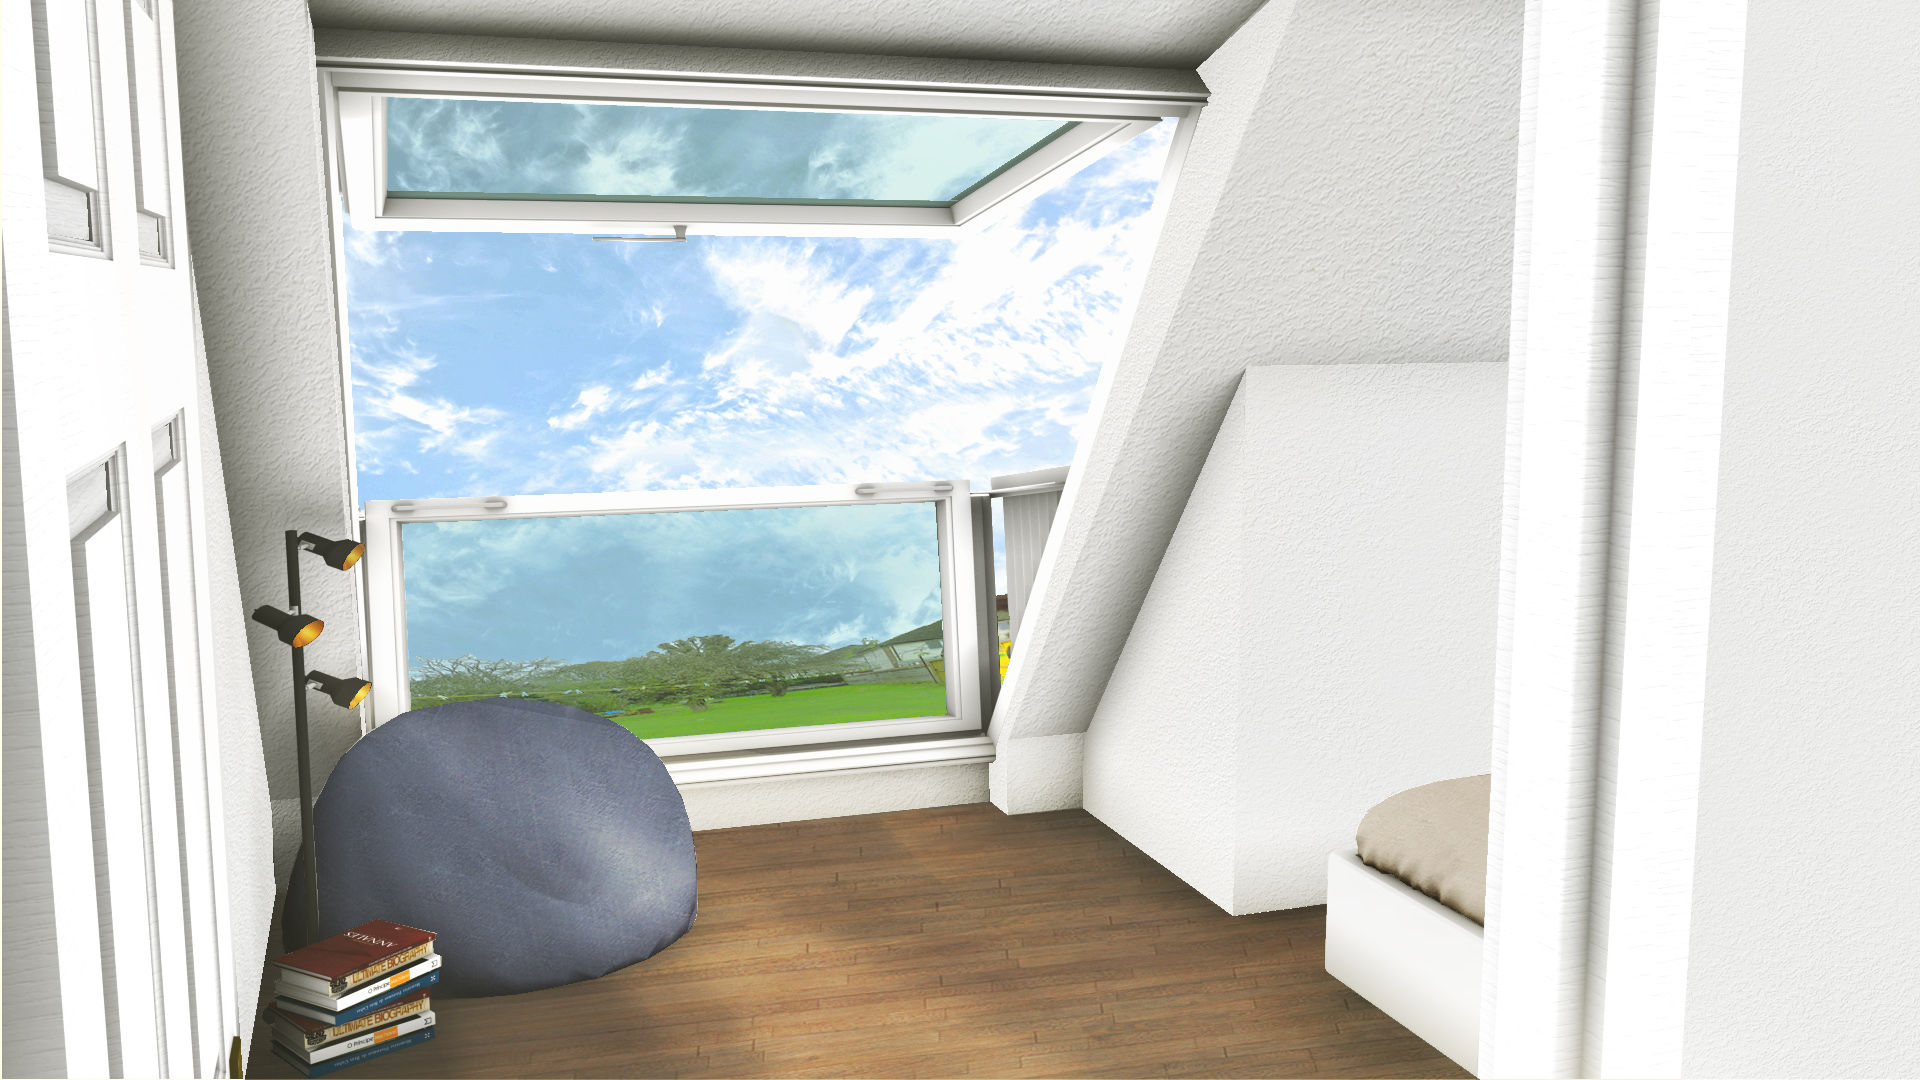 Balcony XTid Associates Balcony,skylight,views,double room,bedroom,family,3D,design,ventilation,windows